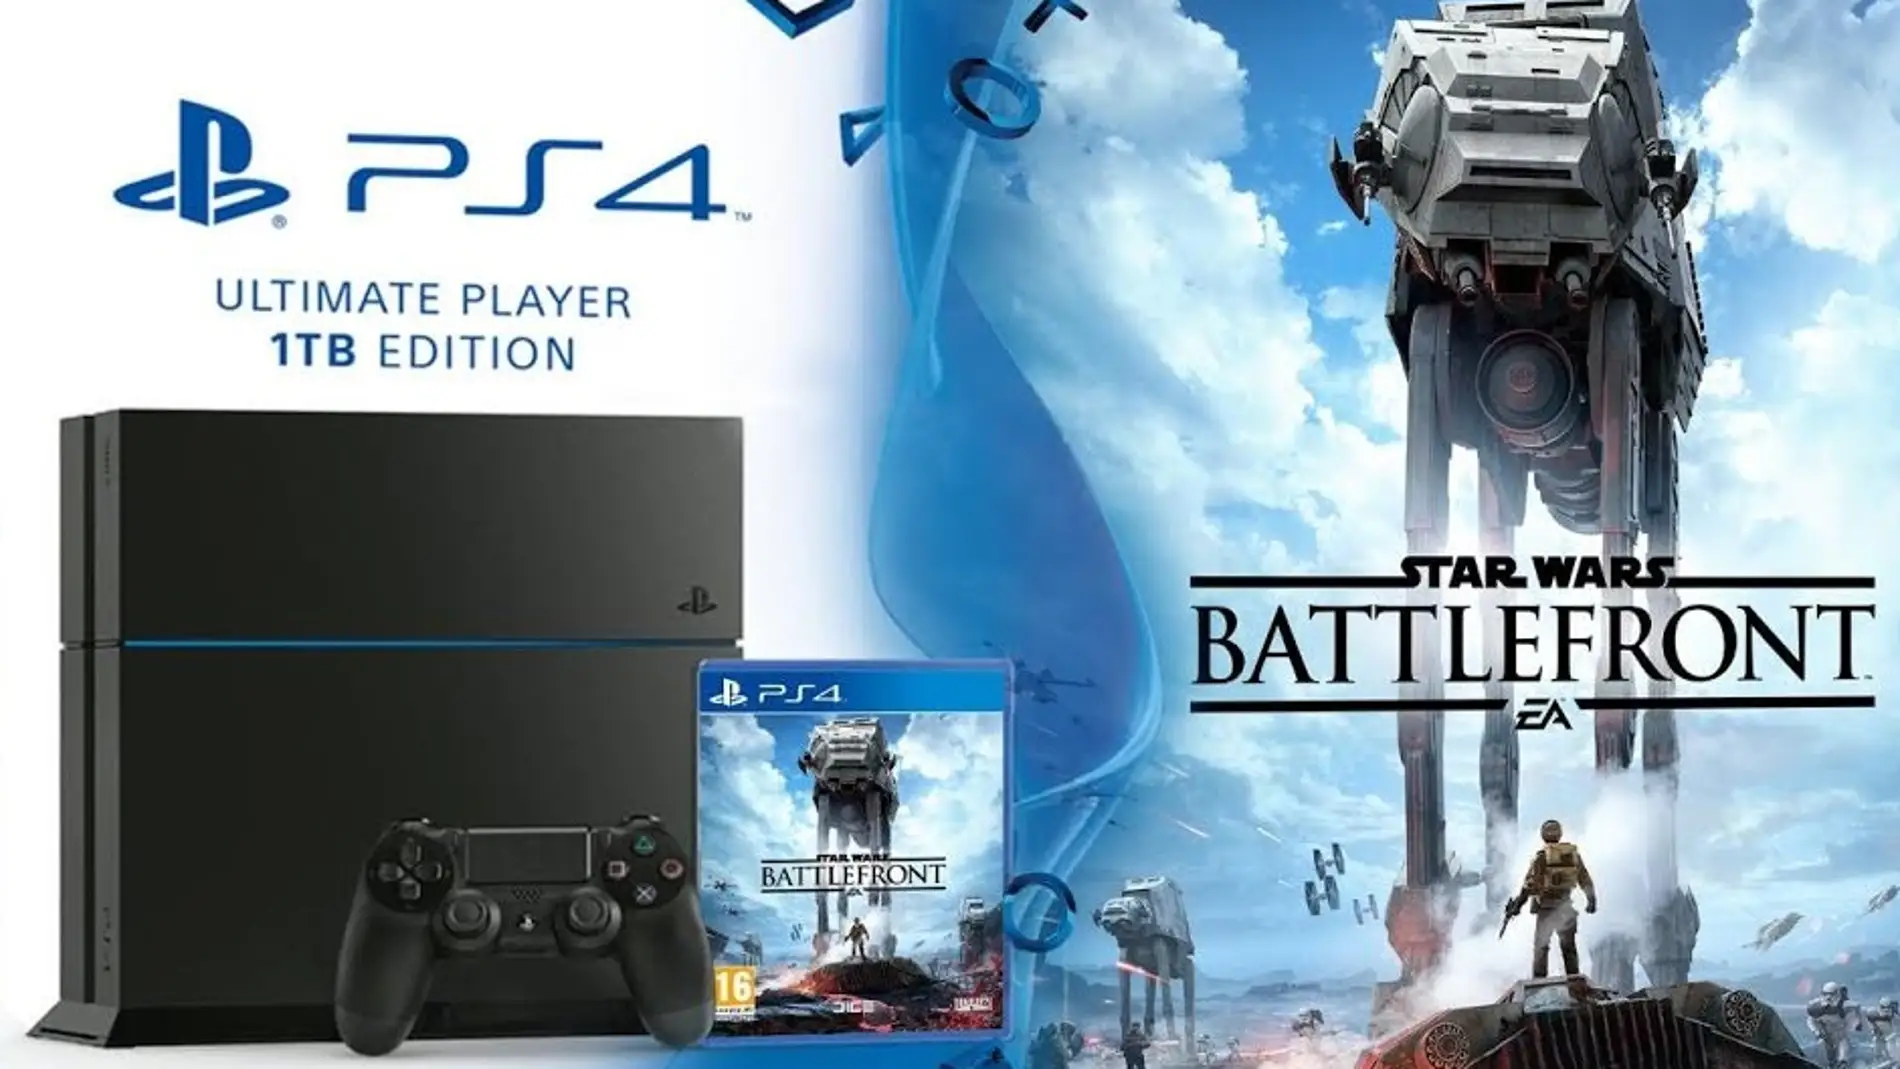 Pack PS4 y Star Wars: Battlefront